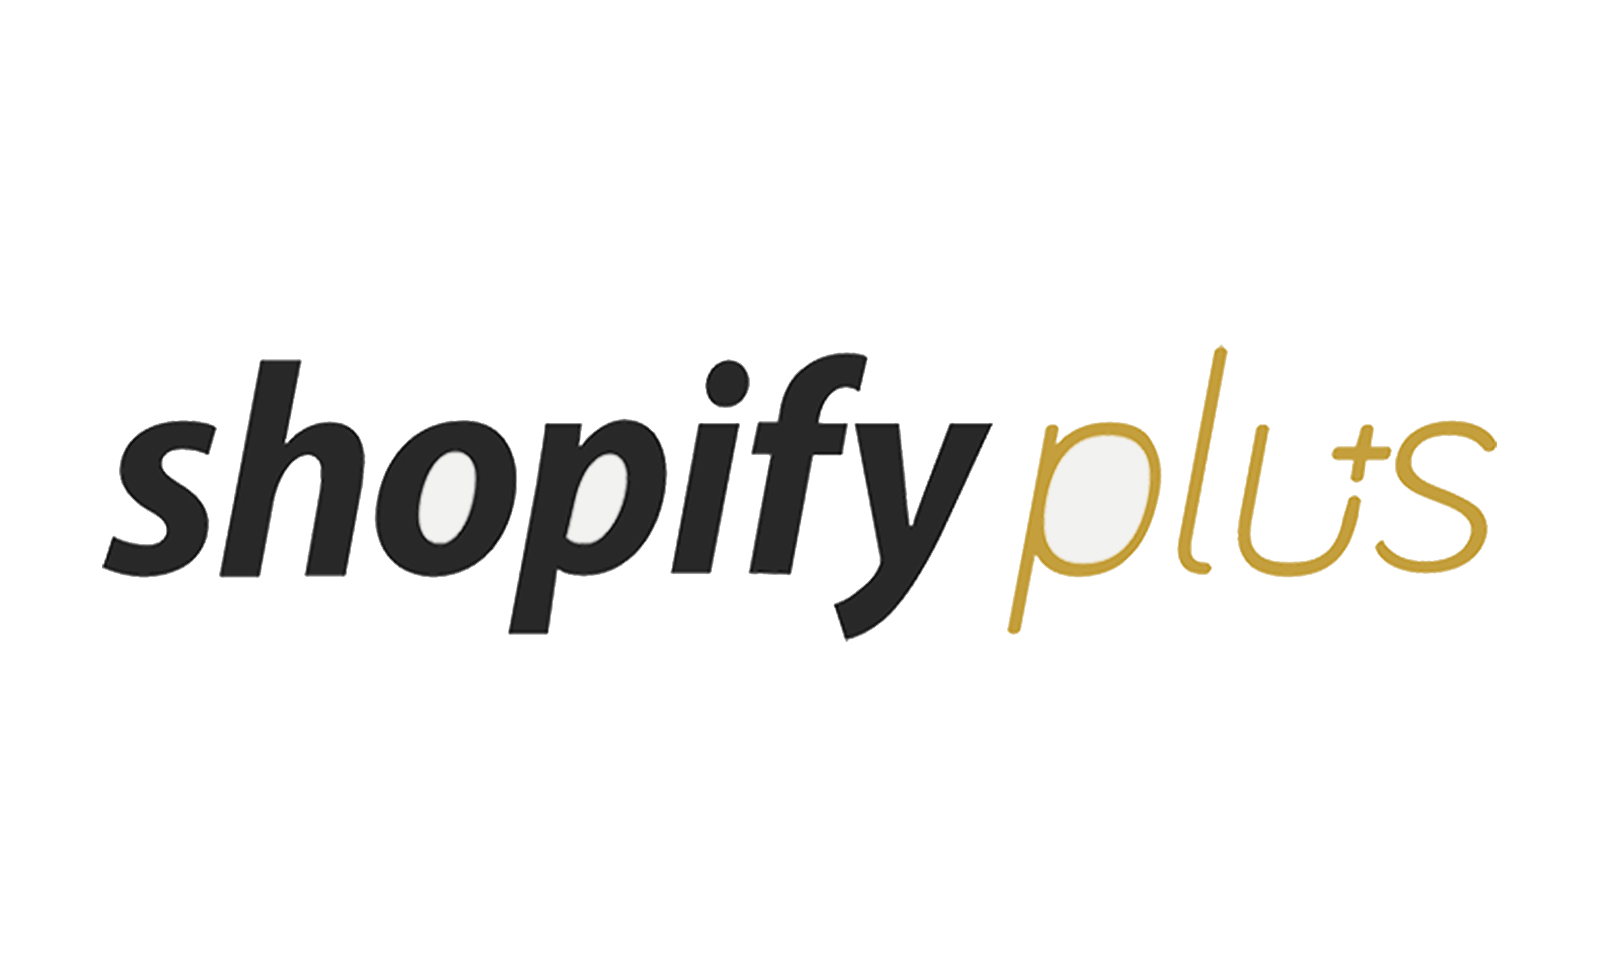 Choosing Shopify Plus